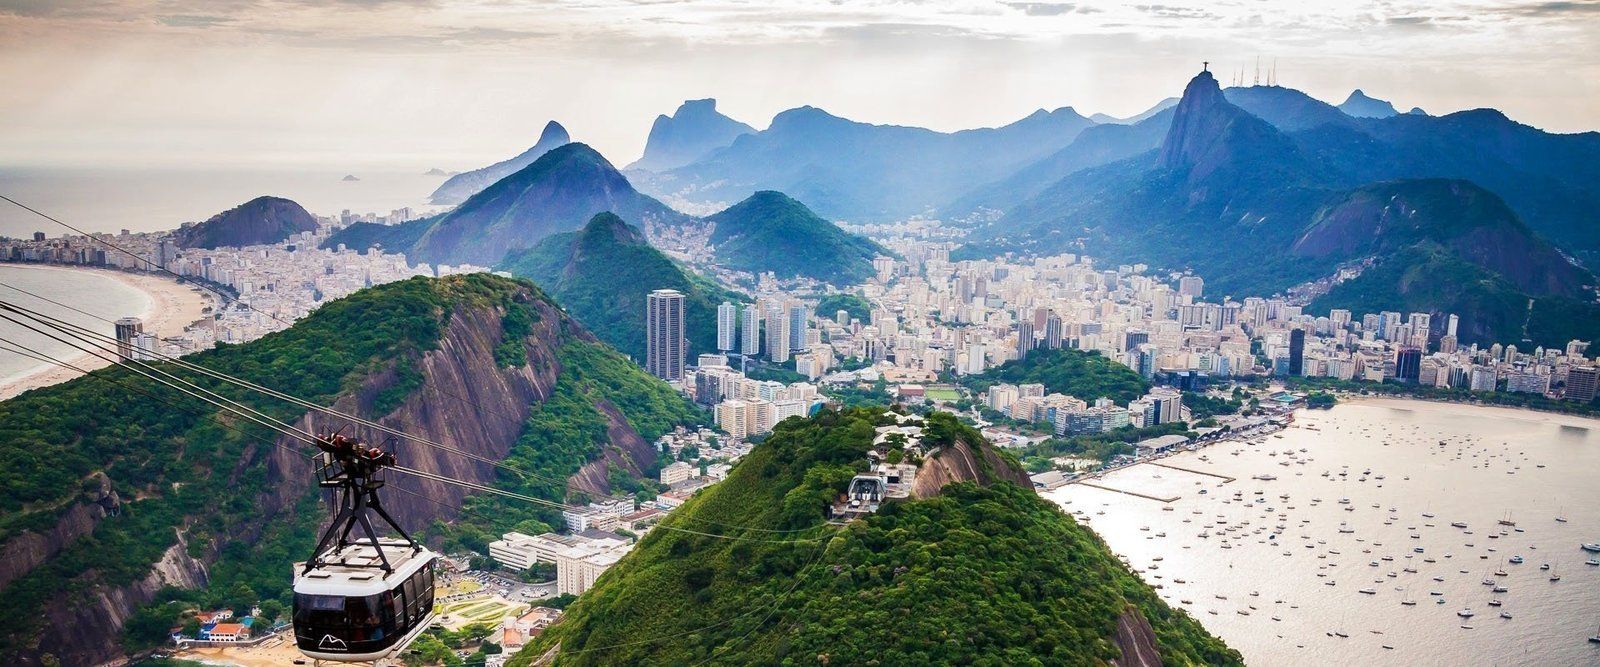 Rio de Janeiro au Brésil : lieux intéressants sur le blog de voyage
